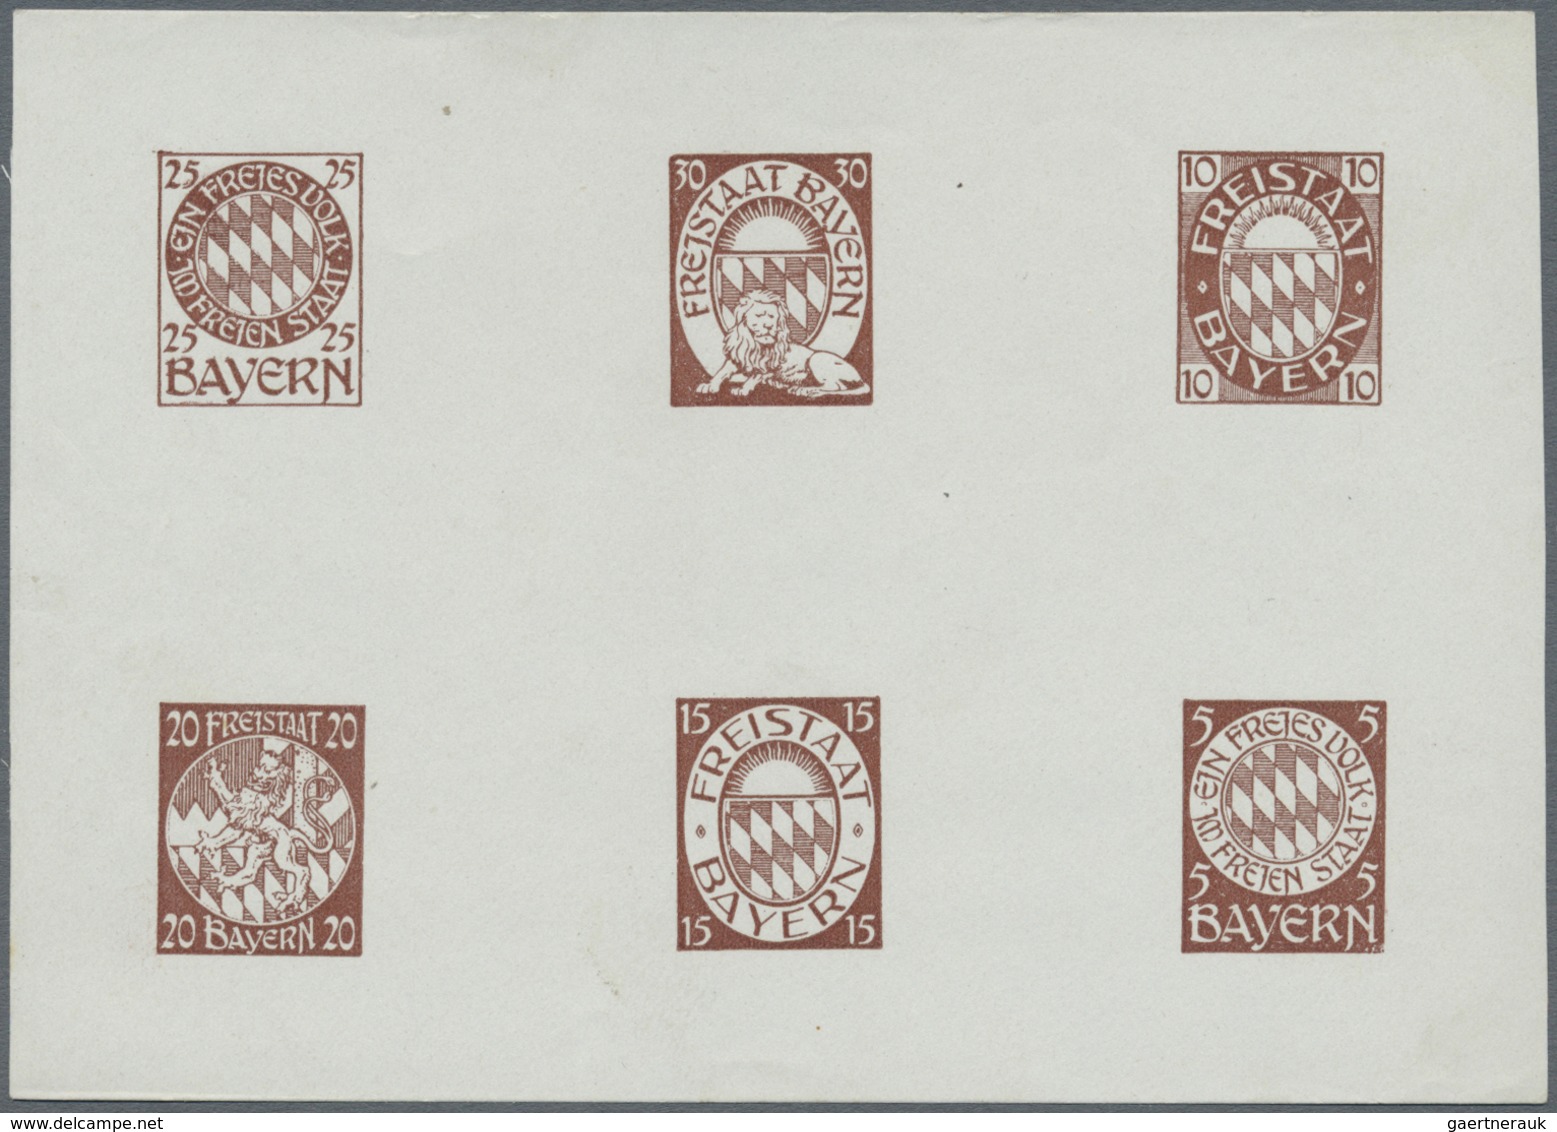 (*) Bayern - Besonderheiten: 1910/1920, 6 Essay-Blöcke mit je 6 Marken in verschiedenen Farben, 1 Block